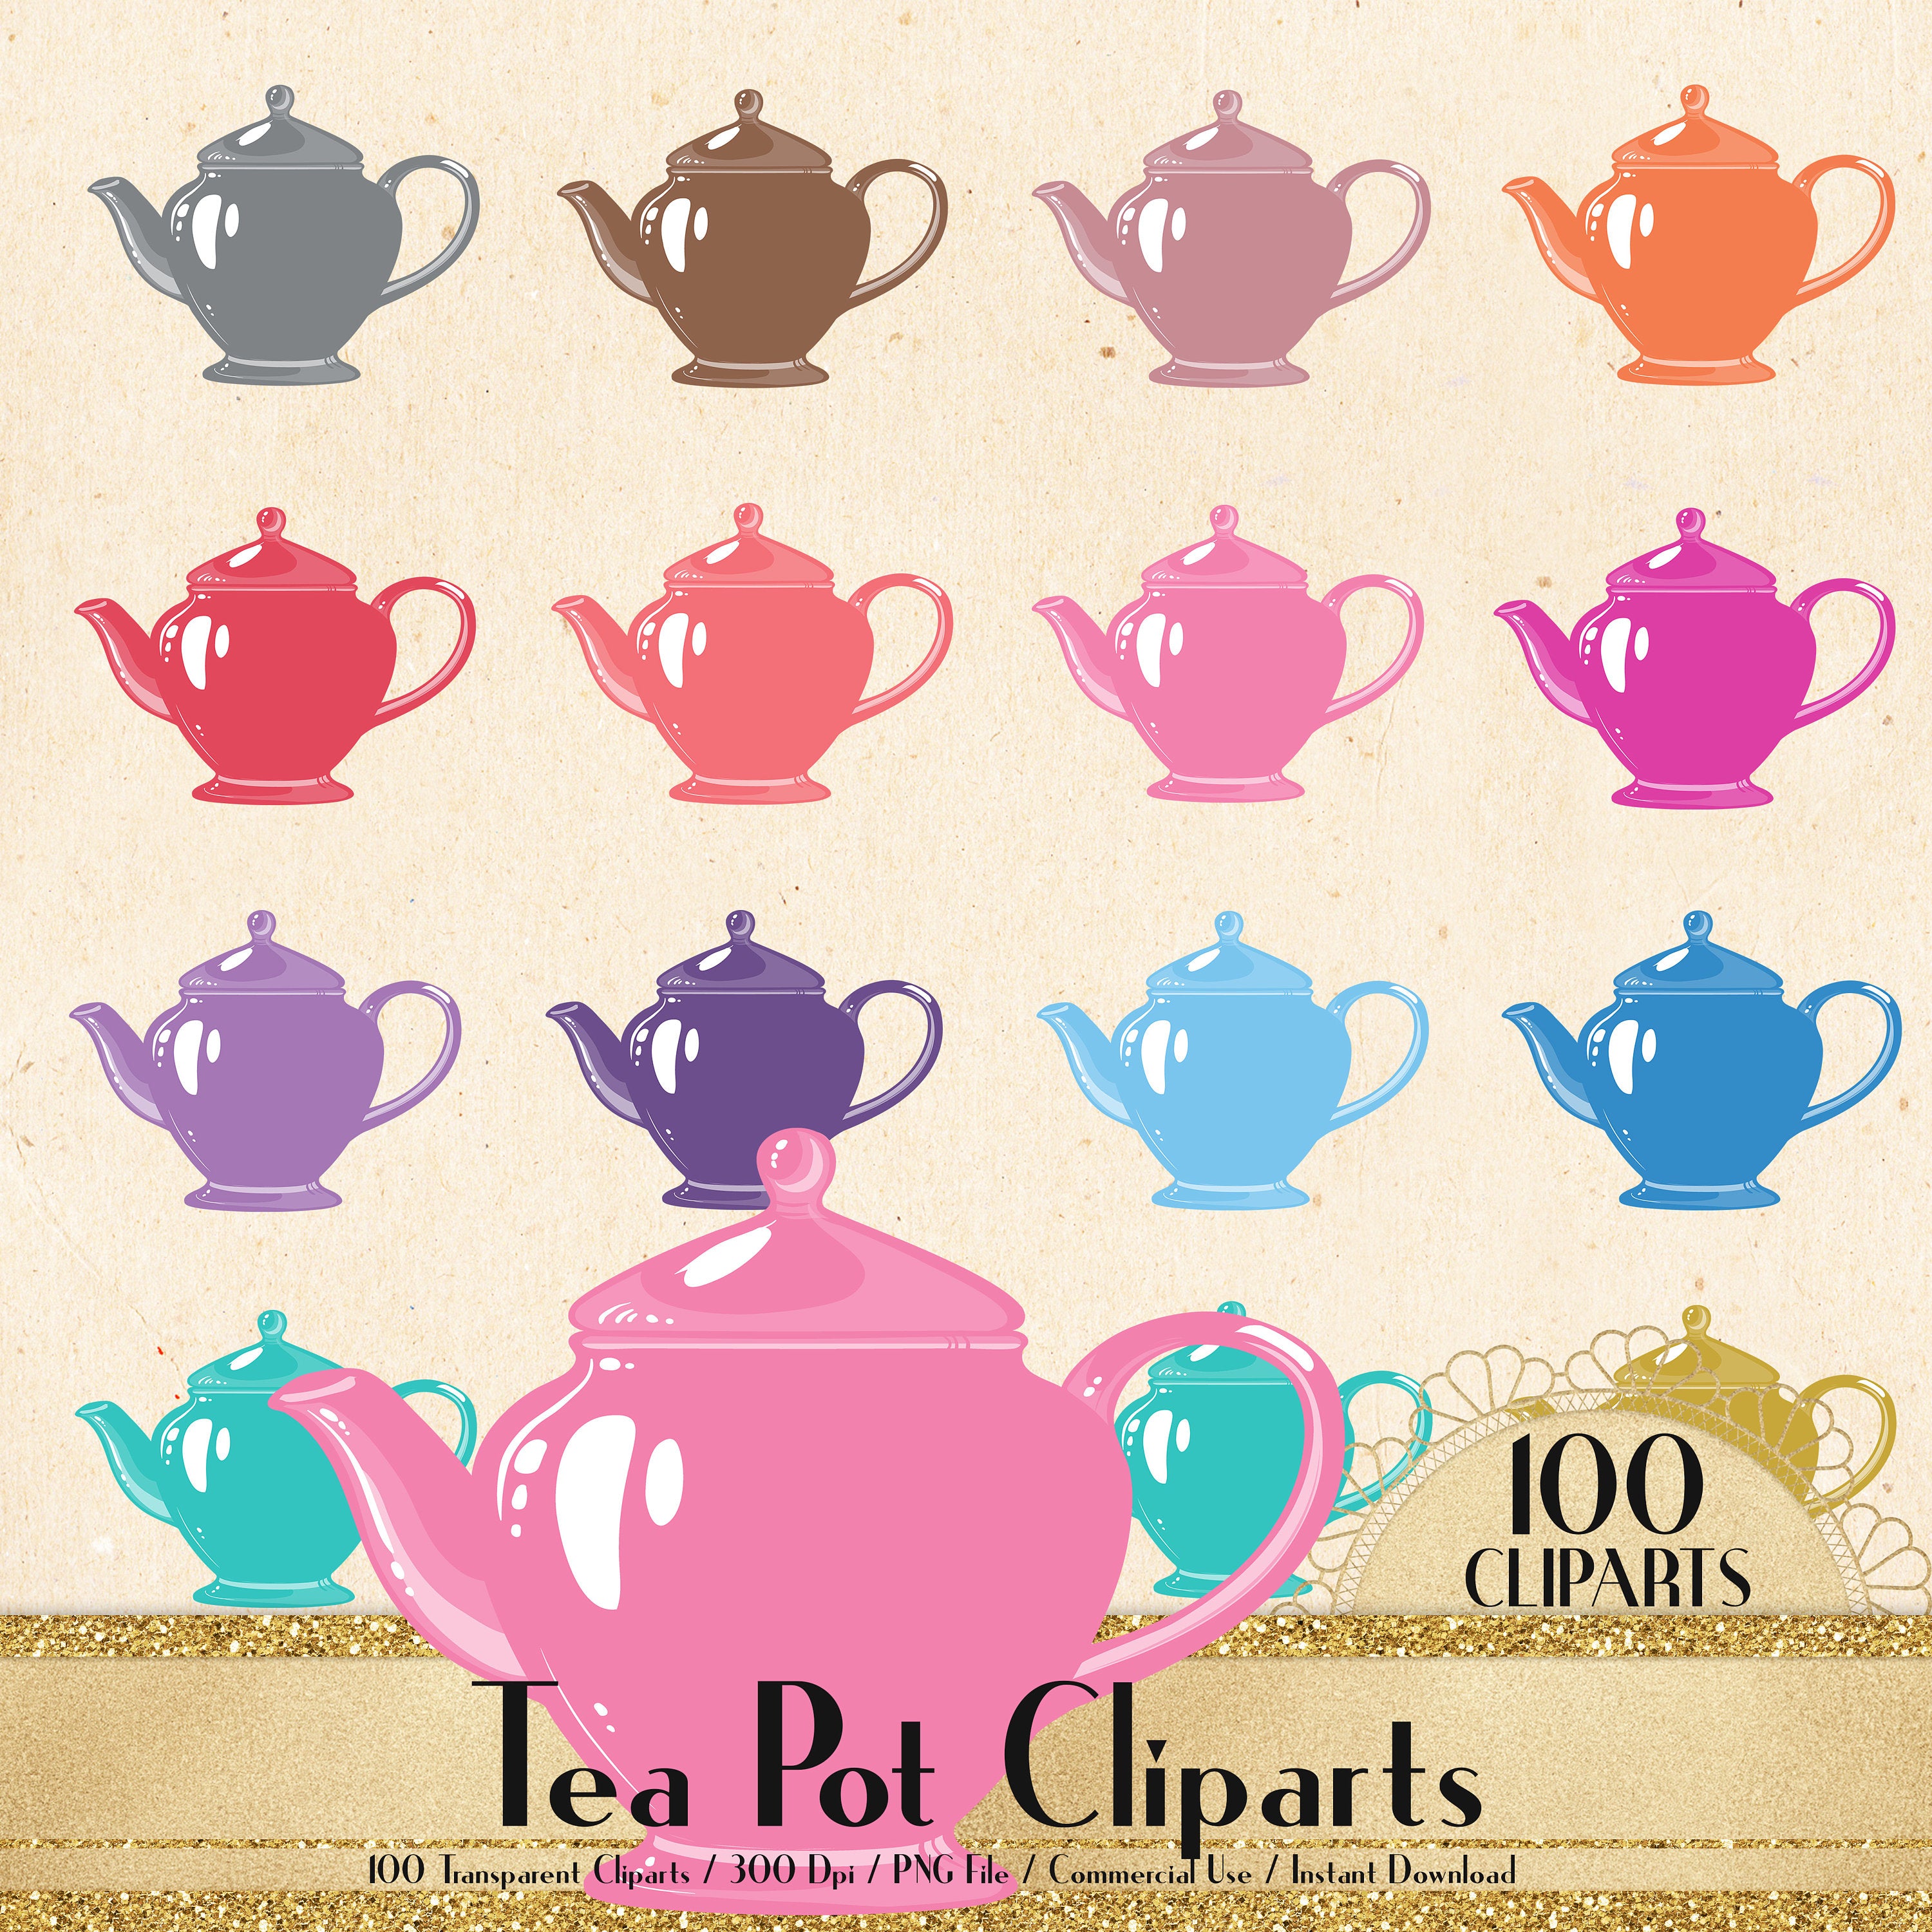 100 Tea Pot Cliparts, Garden Party Cliparts, Lovely Clipart, 100 PNG Clipart, Planner Clipart, Valentine Clip Arts, Tea Time, Tea Party